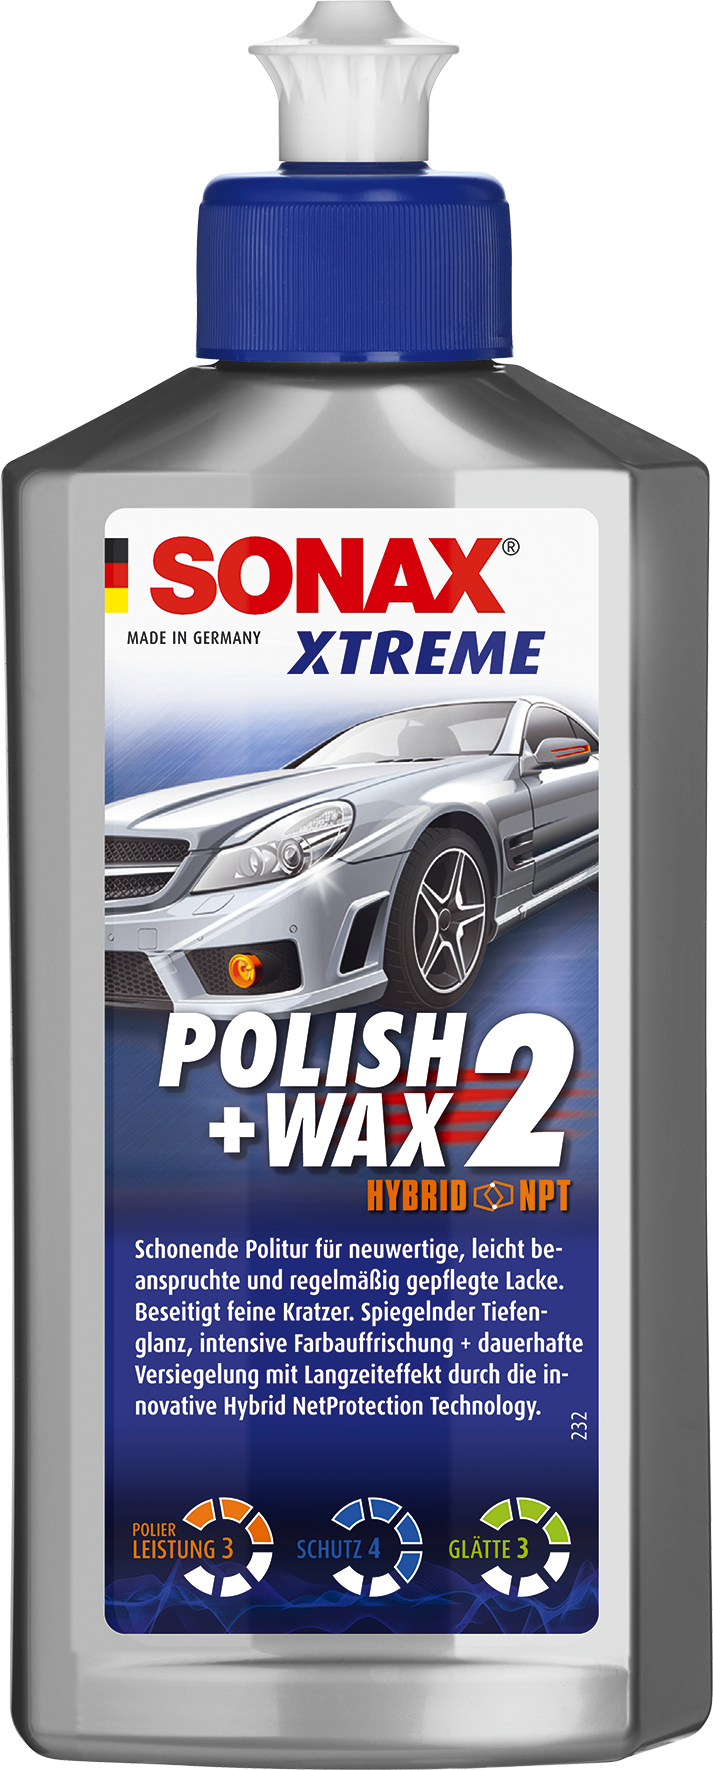  SONAX 3 NanoPro 02022000 Xtreme Polish and Wax